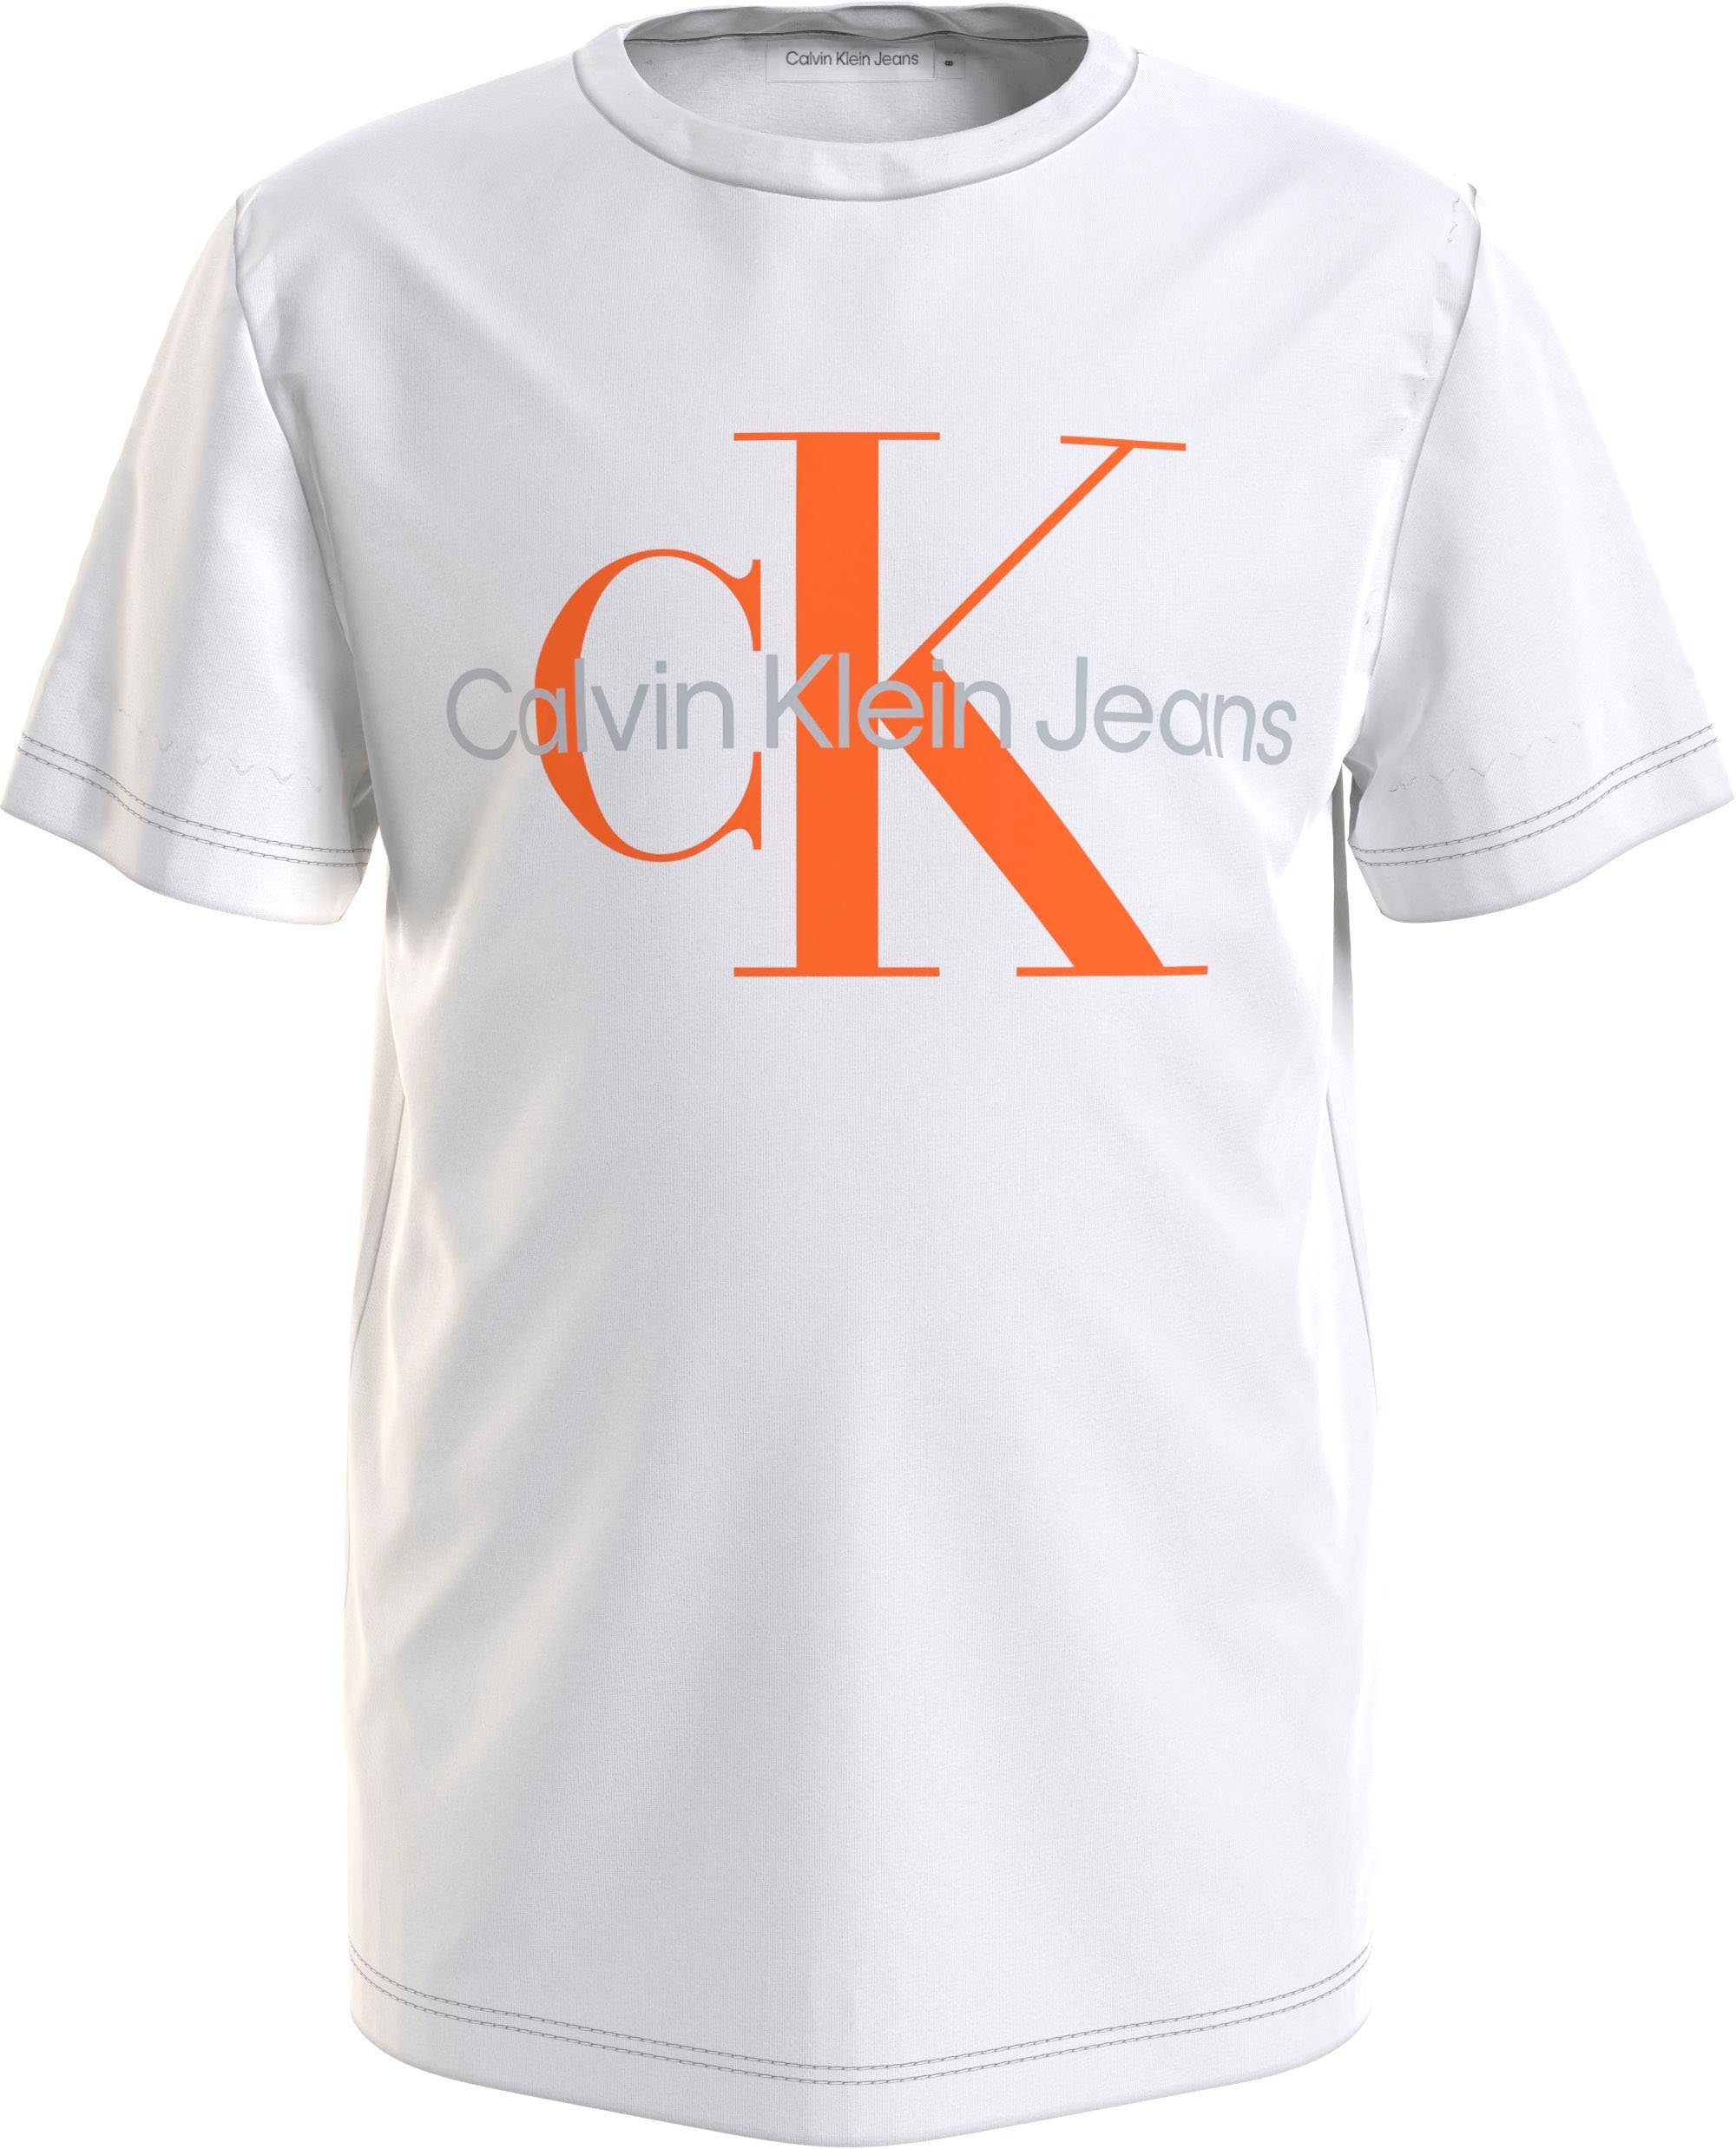 Calvin Klein Jeans T-Shirt MONOGRAM LOGO T-SHIRT Kinder Kids Junior MiniMe,für Mädchen und Jungen weiß | T-Shirts